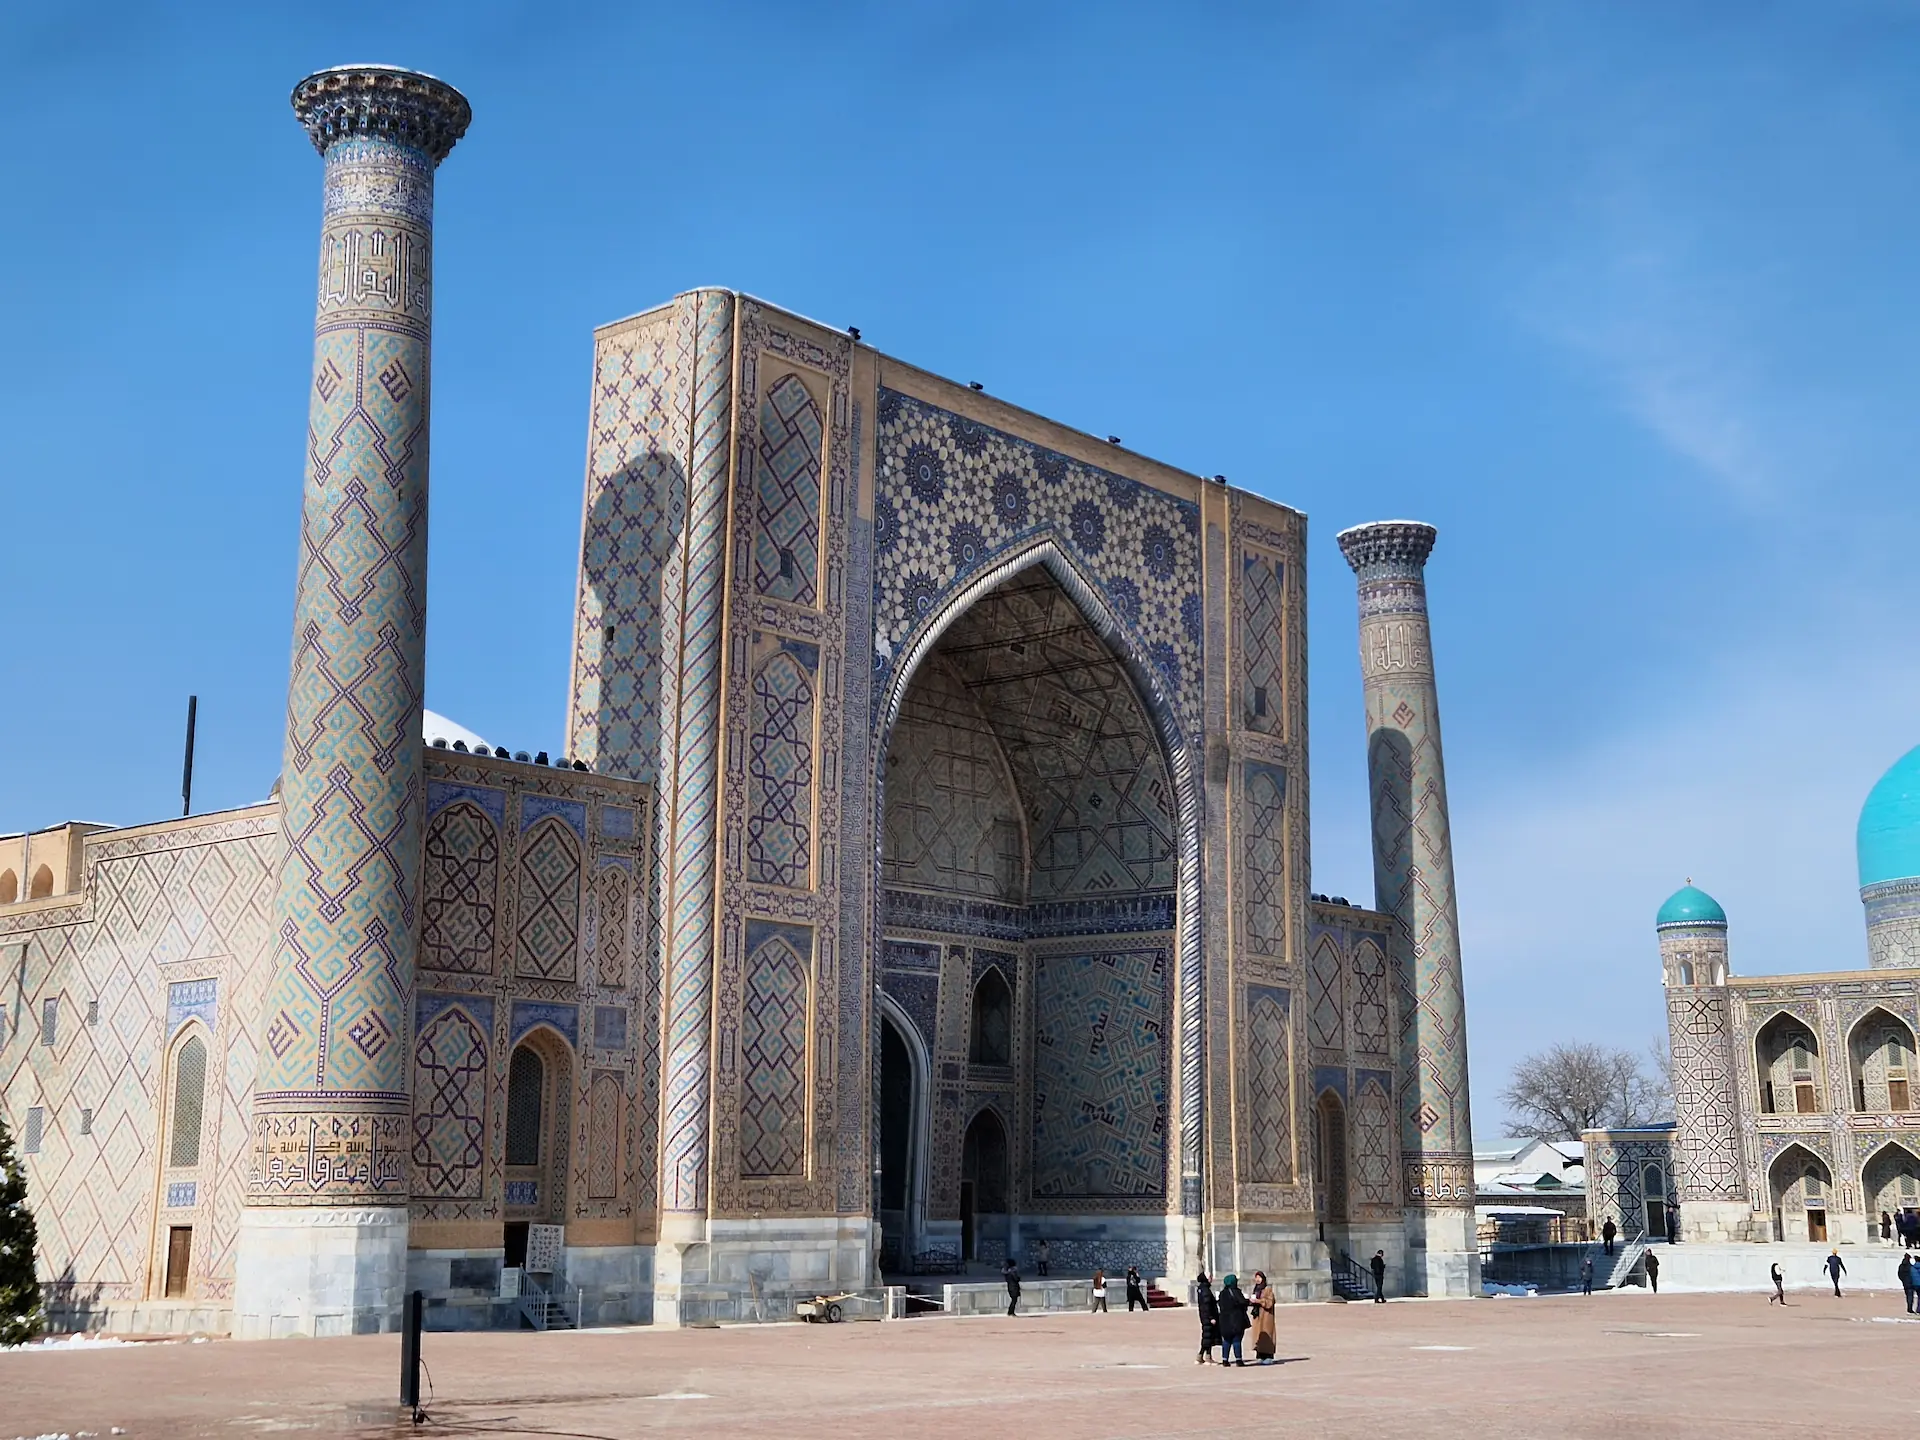 Madrassa se trouvant sur la place Registan, s'élevant avec ces deux minarets.